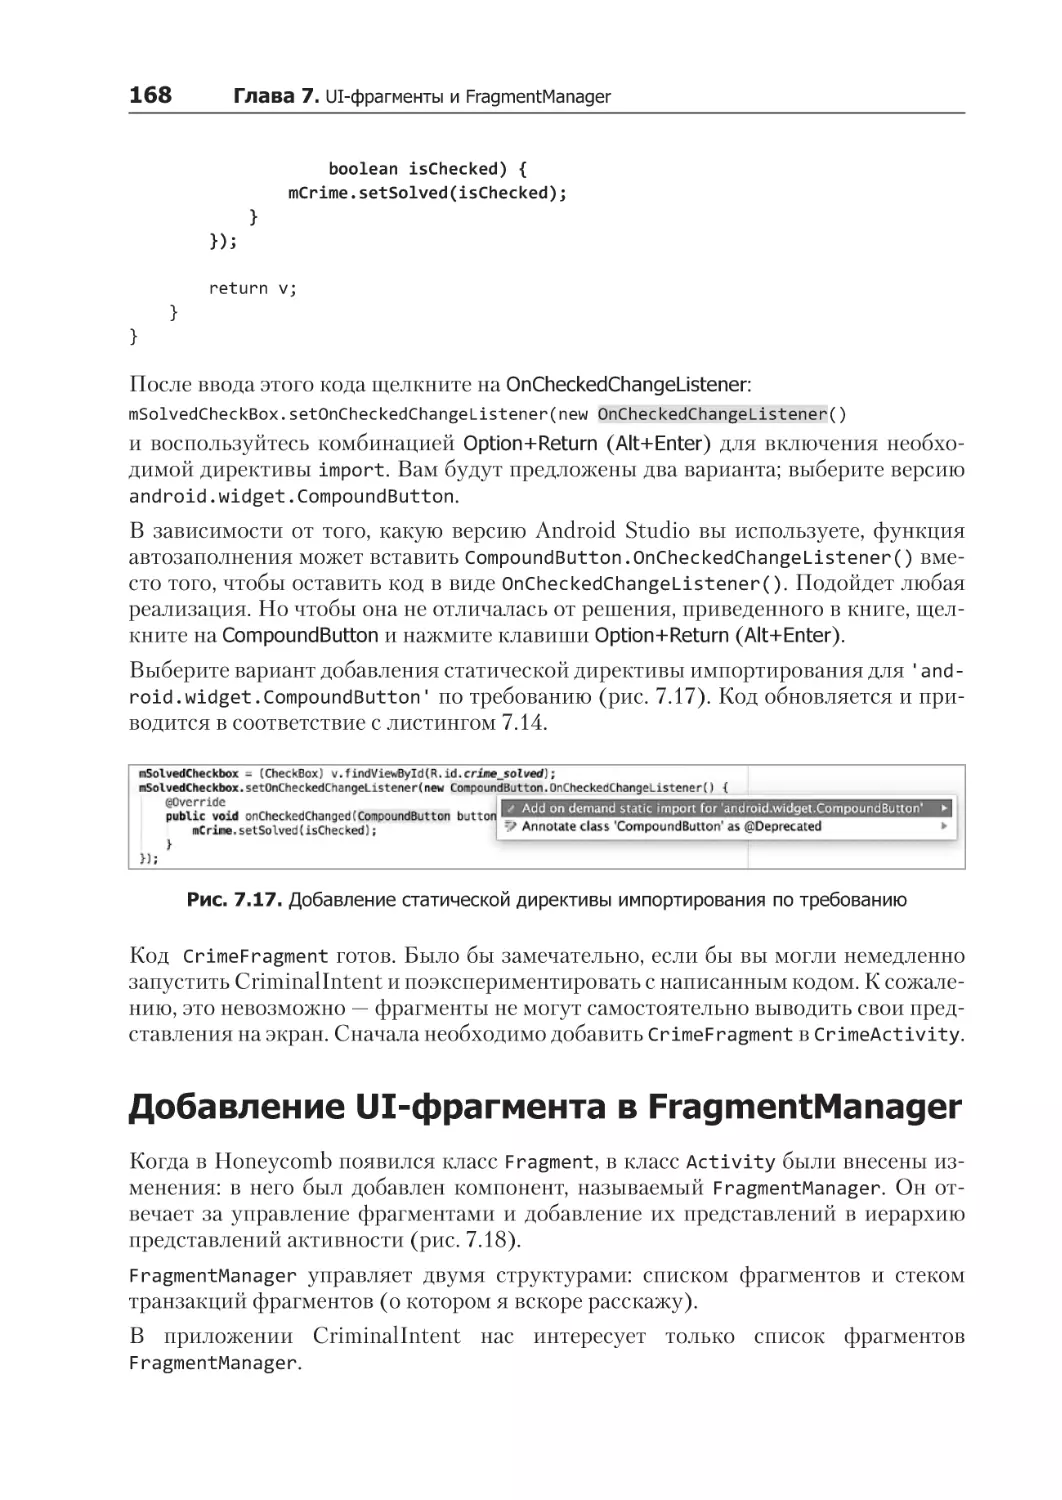 Добавление UI-фрагмента в FragmentManager